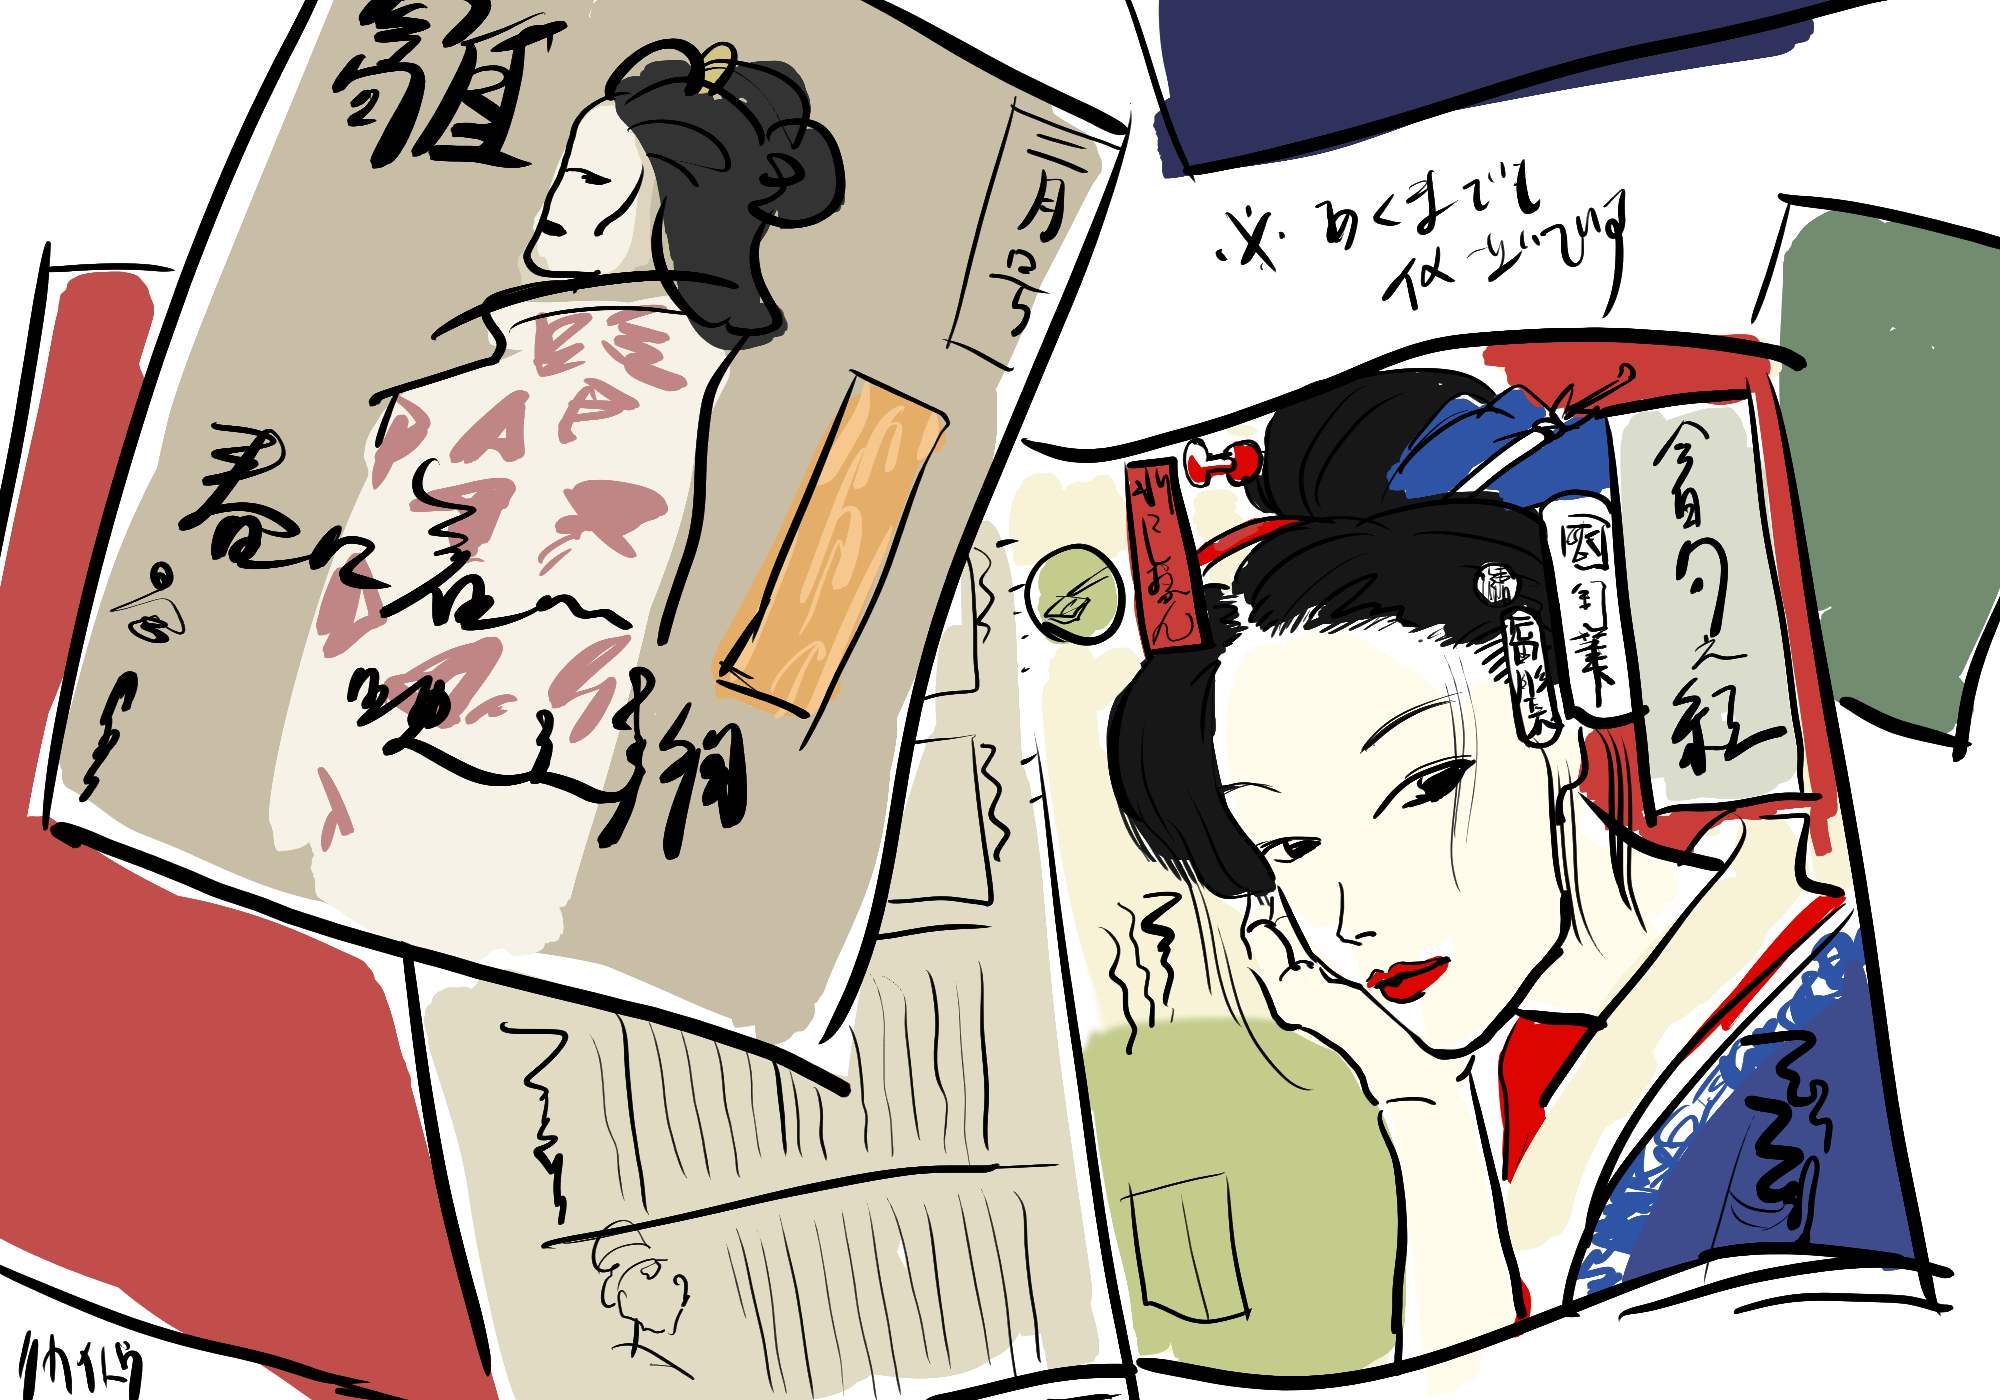 江戸ファッション 多様性 リカイトウのイラスト連載 02 Tsuruto